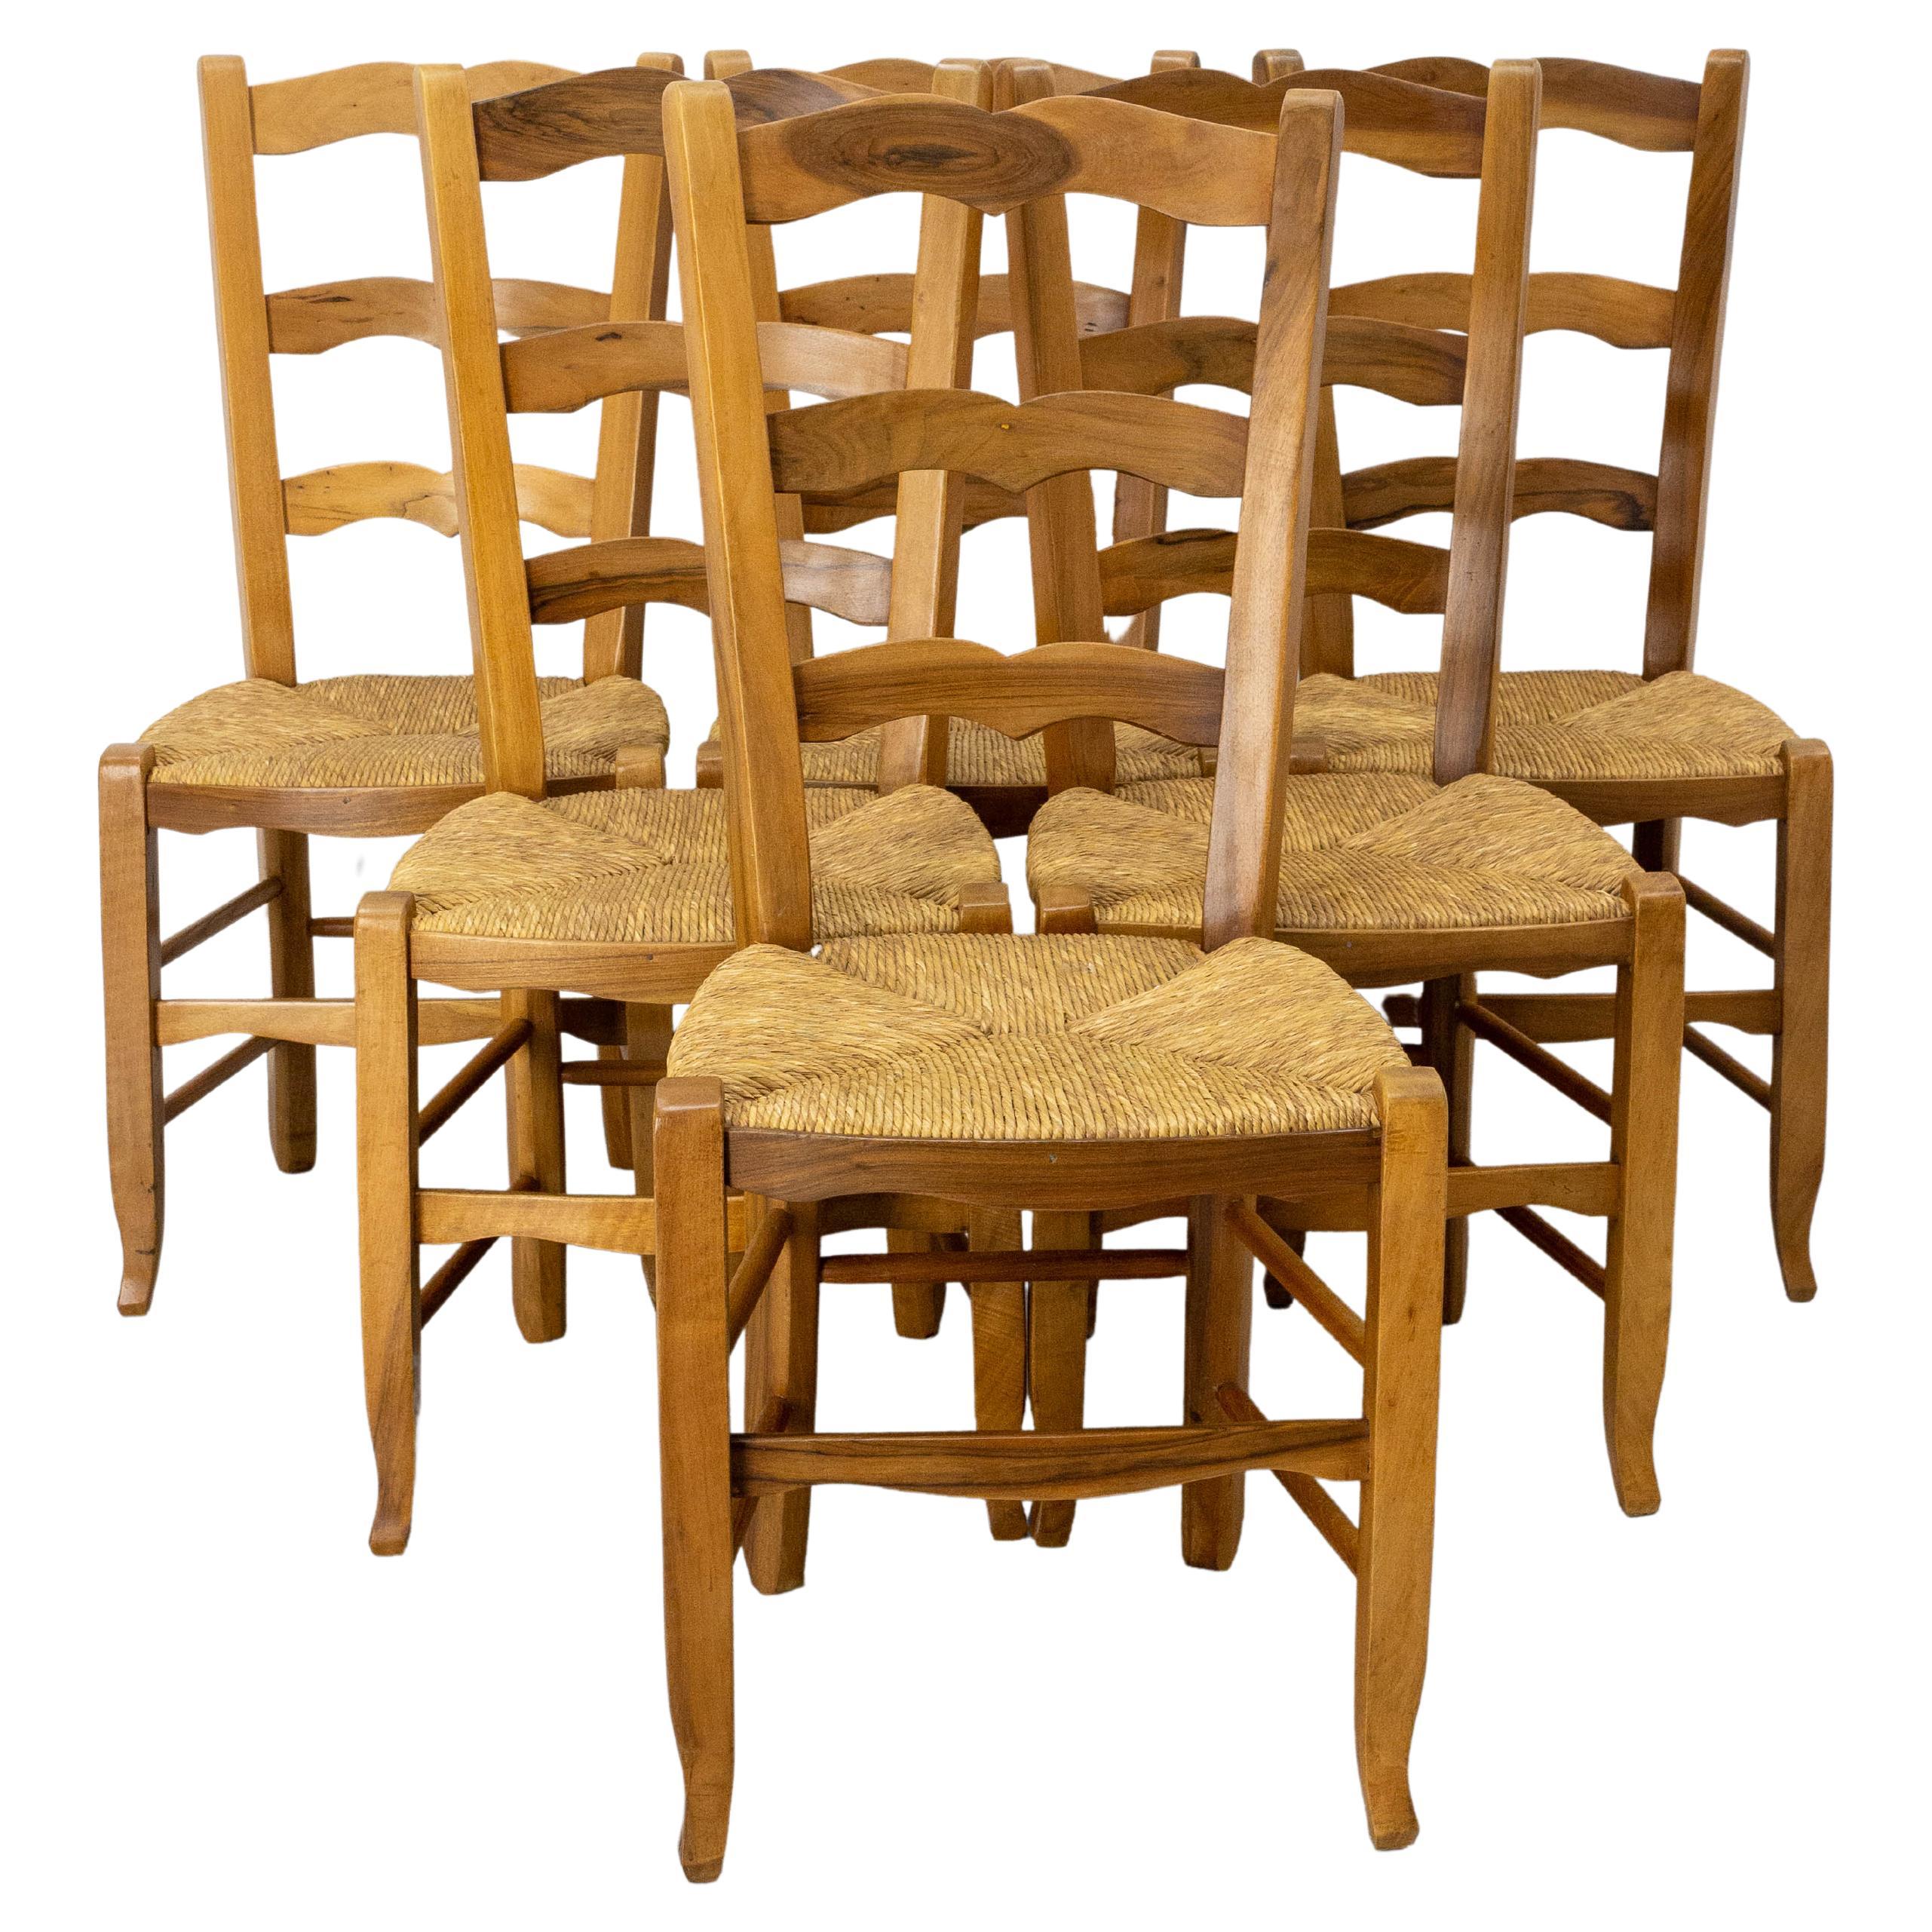  Six chaises de salle à manger françaises en chêne, sièges en jonc, style provincial, vers 1970